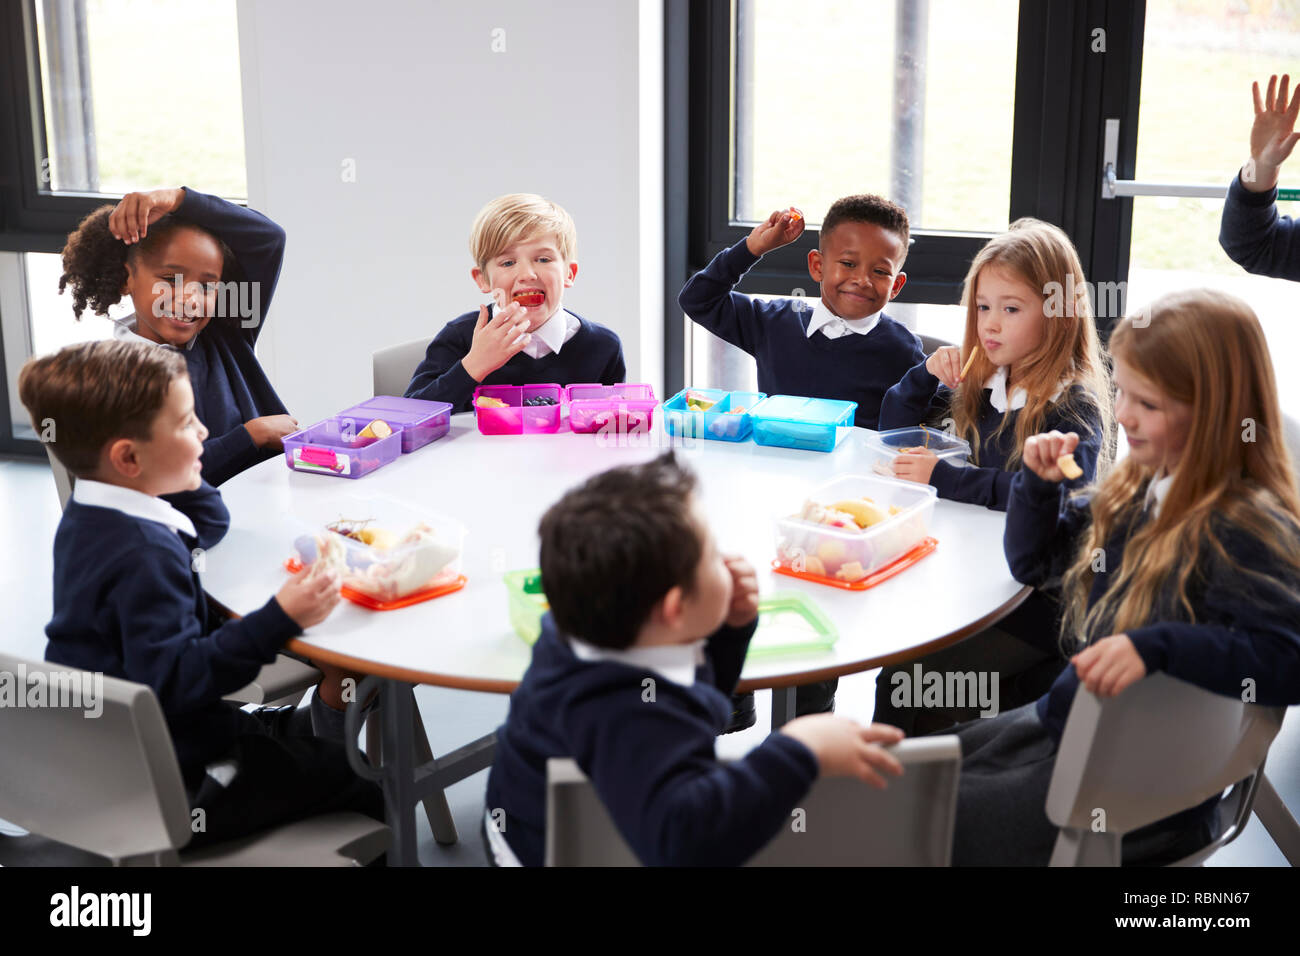 Vista in elevazione della scuola primaria i bambini seduti insieme attorno ad una tavola rotonda di mangiare il loro pranzo al sacco Foto Stock